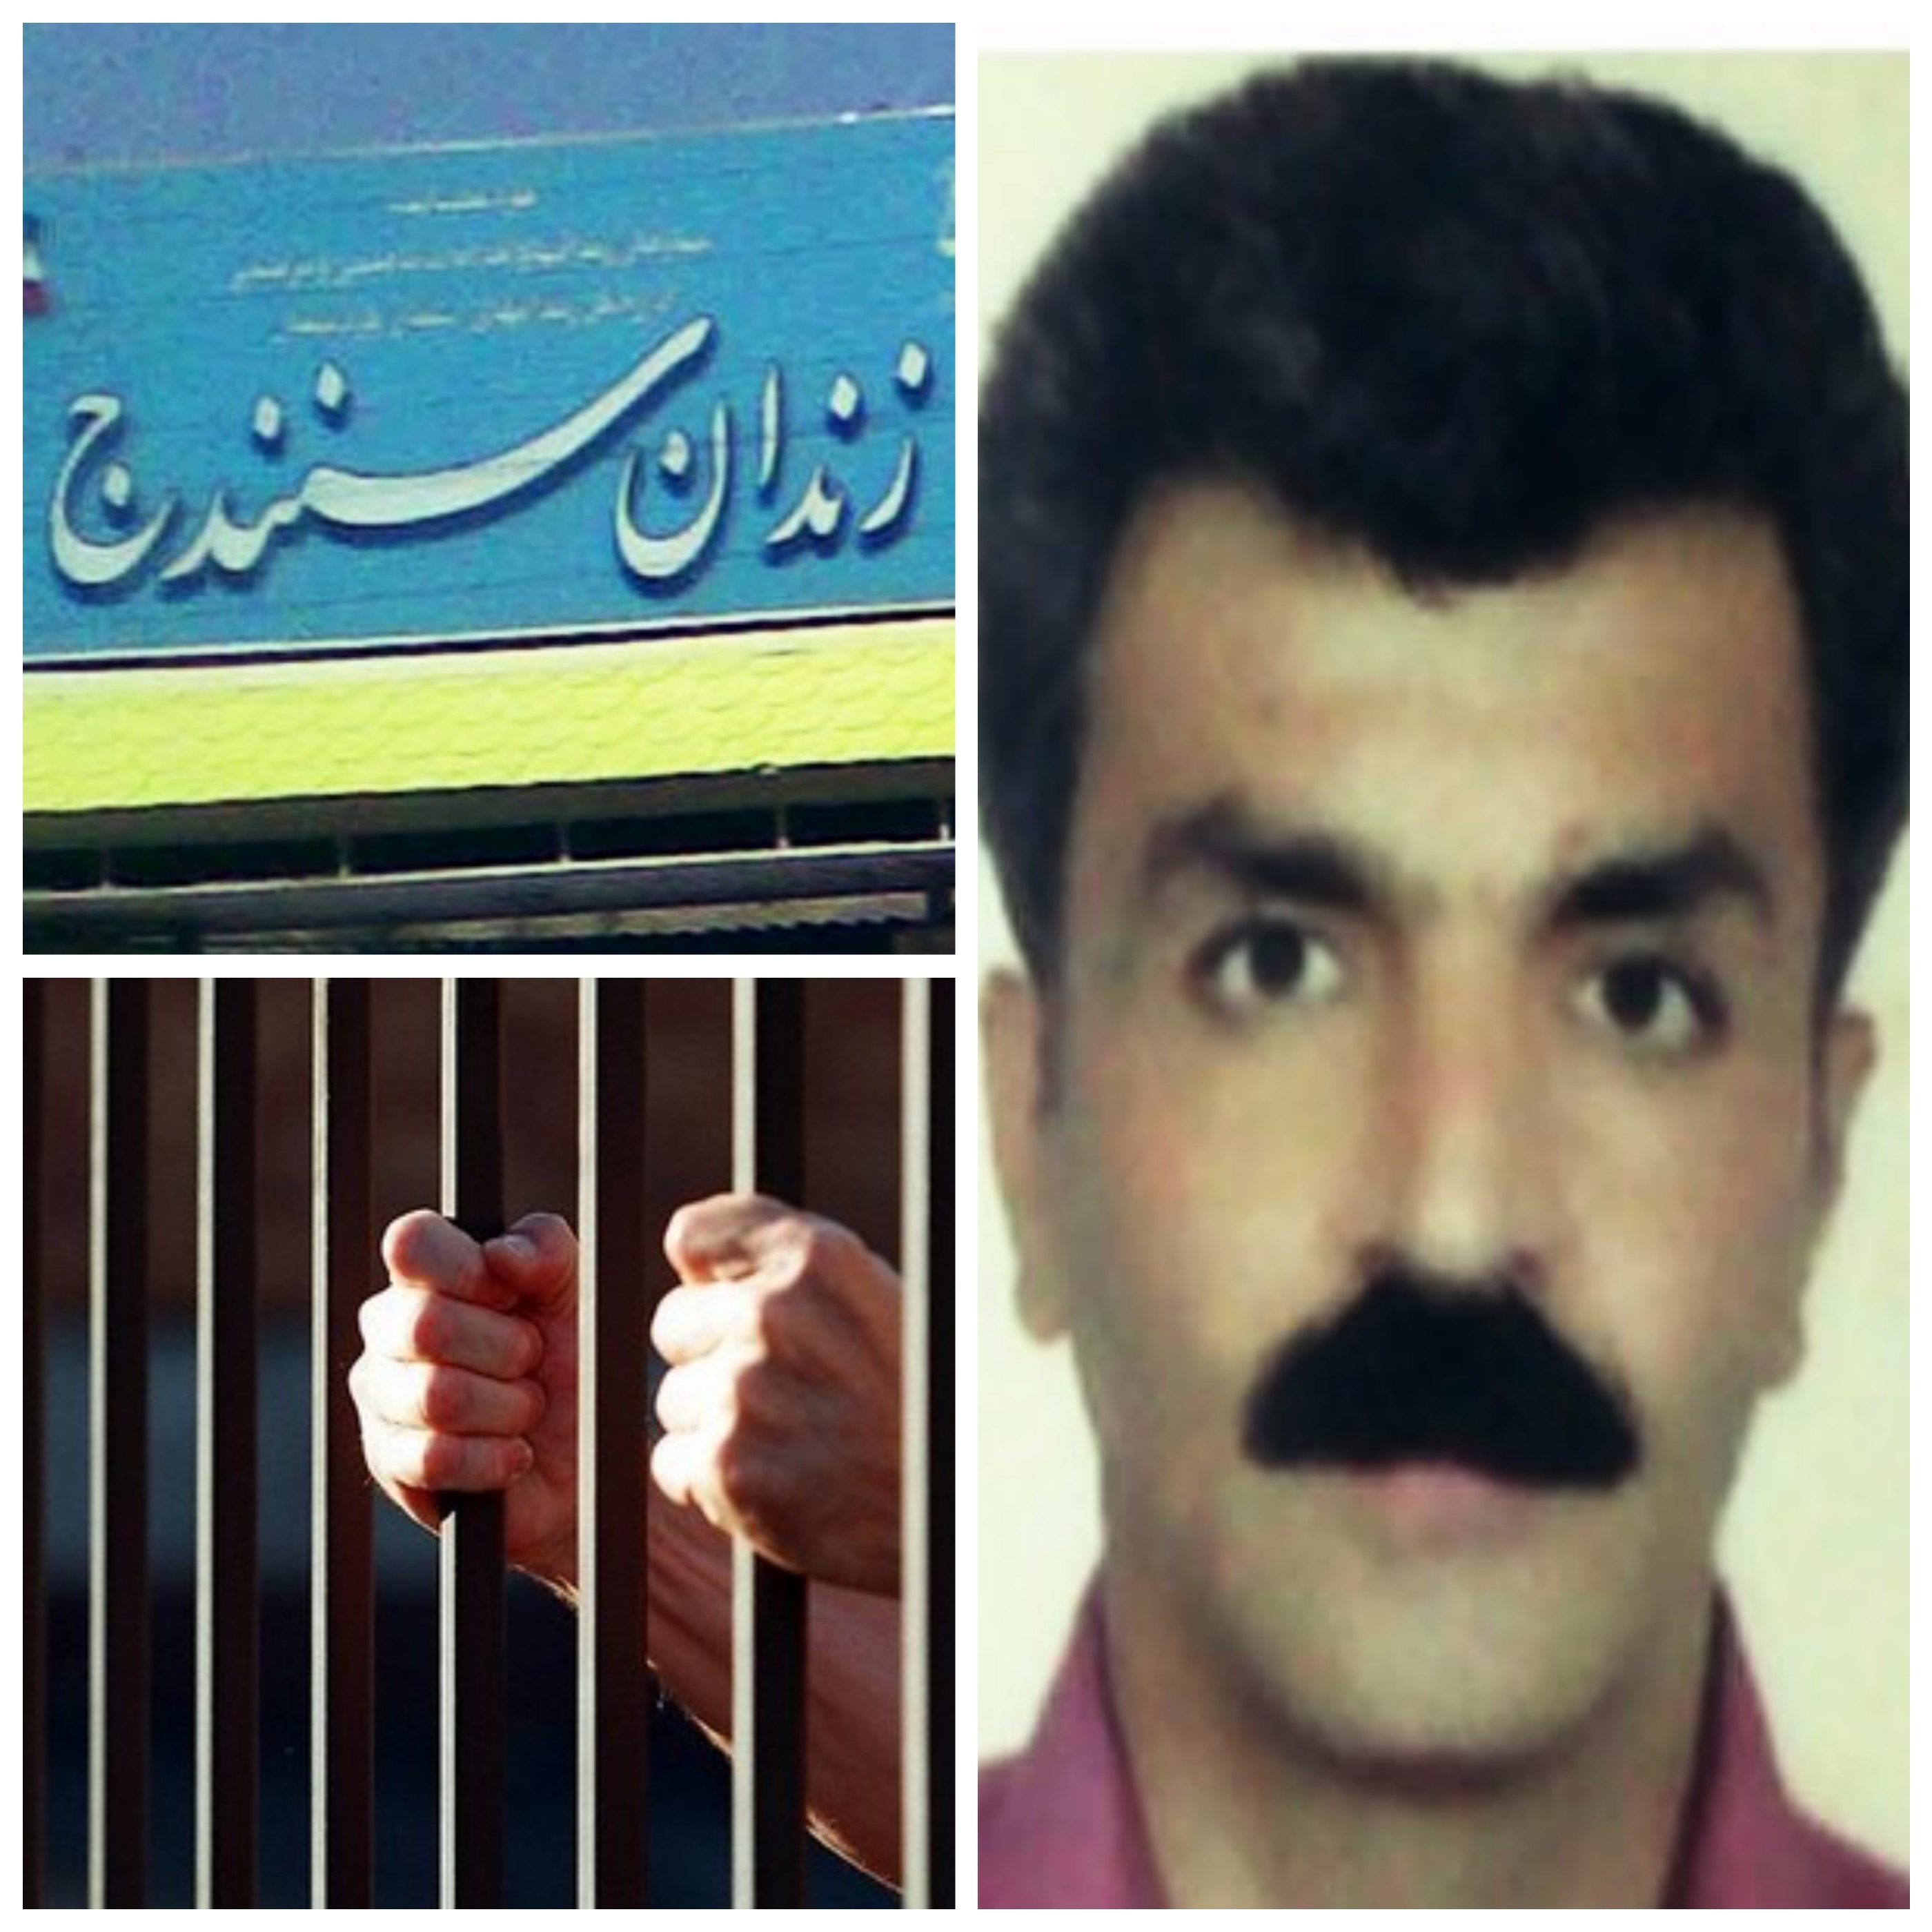 مخالفت با مرخصی و آزادی مشروط جهاندار محمدی در دهمین سال حبس